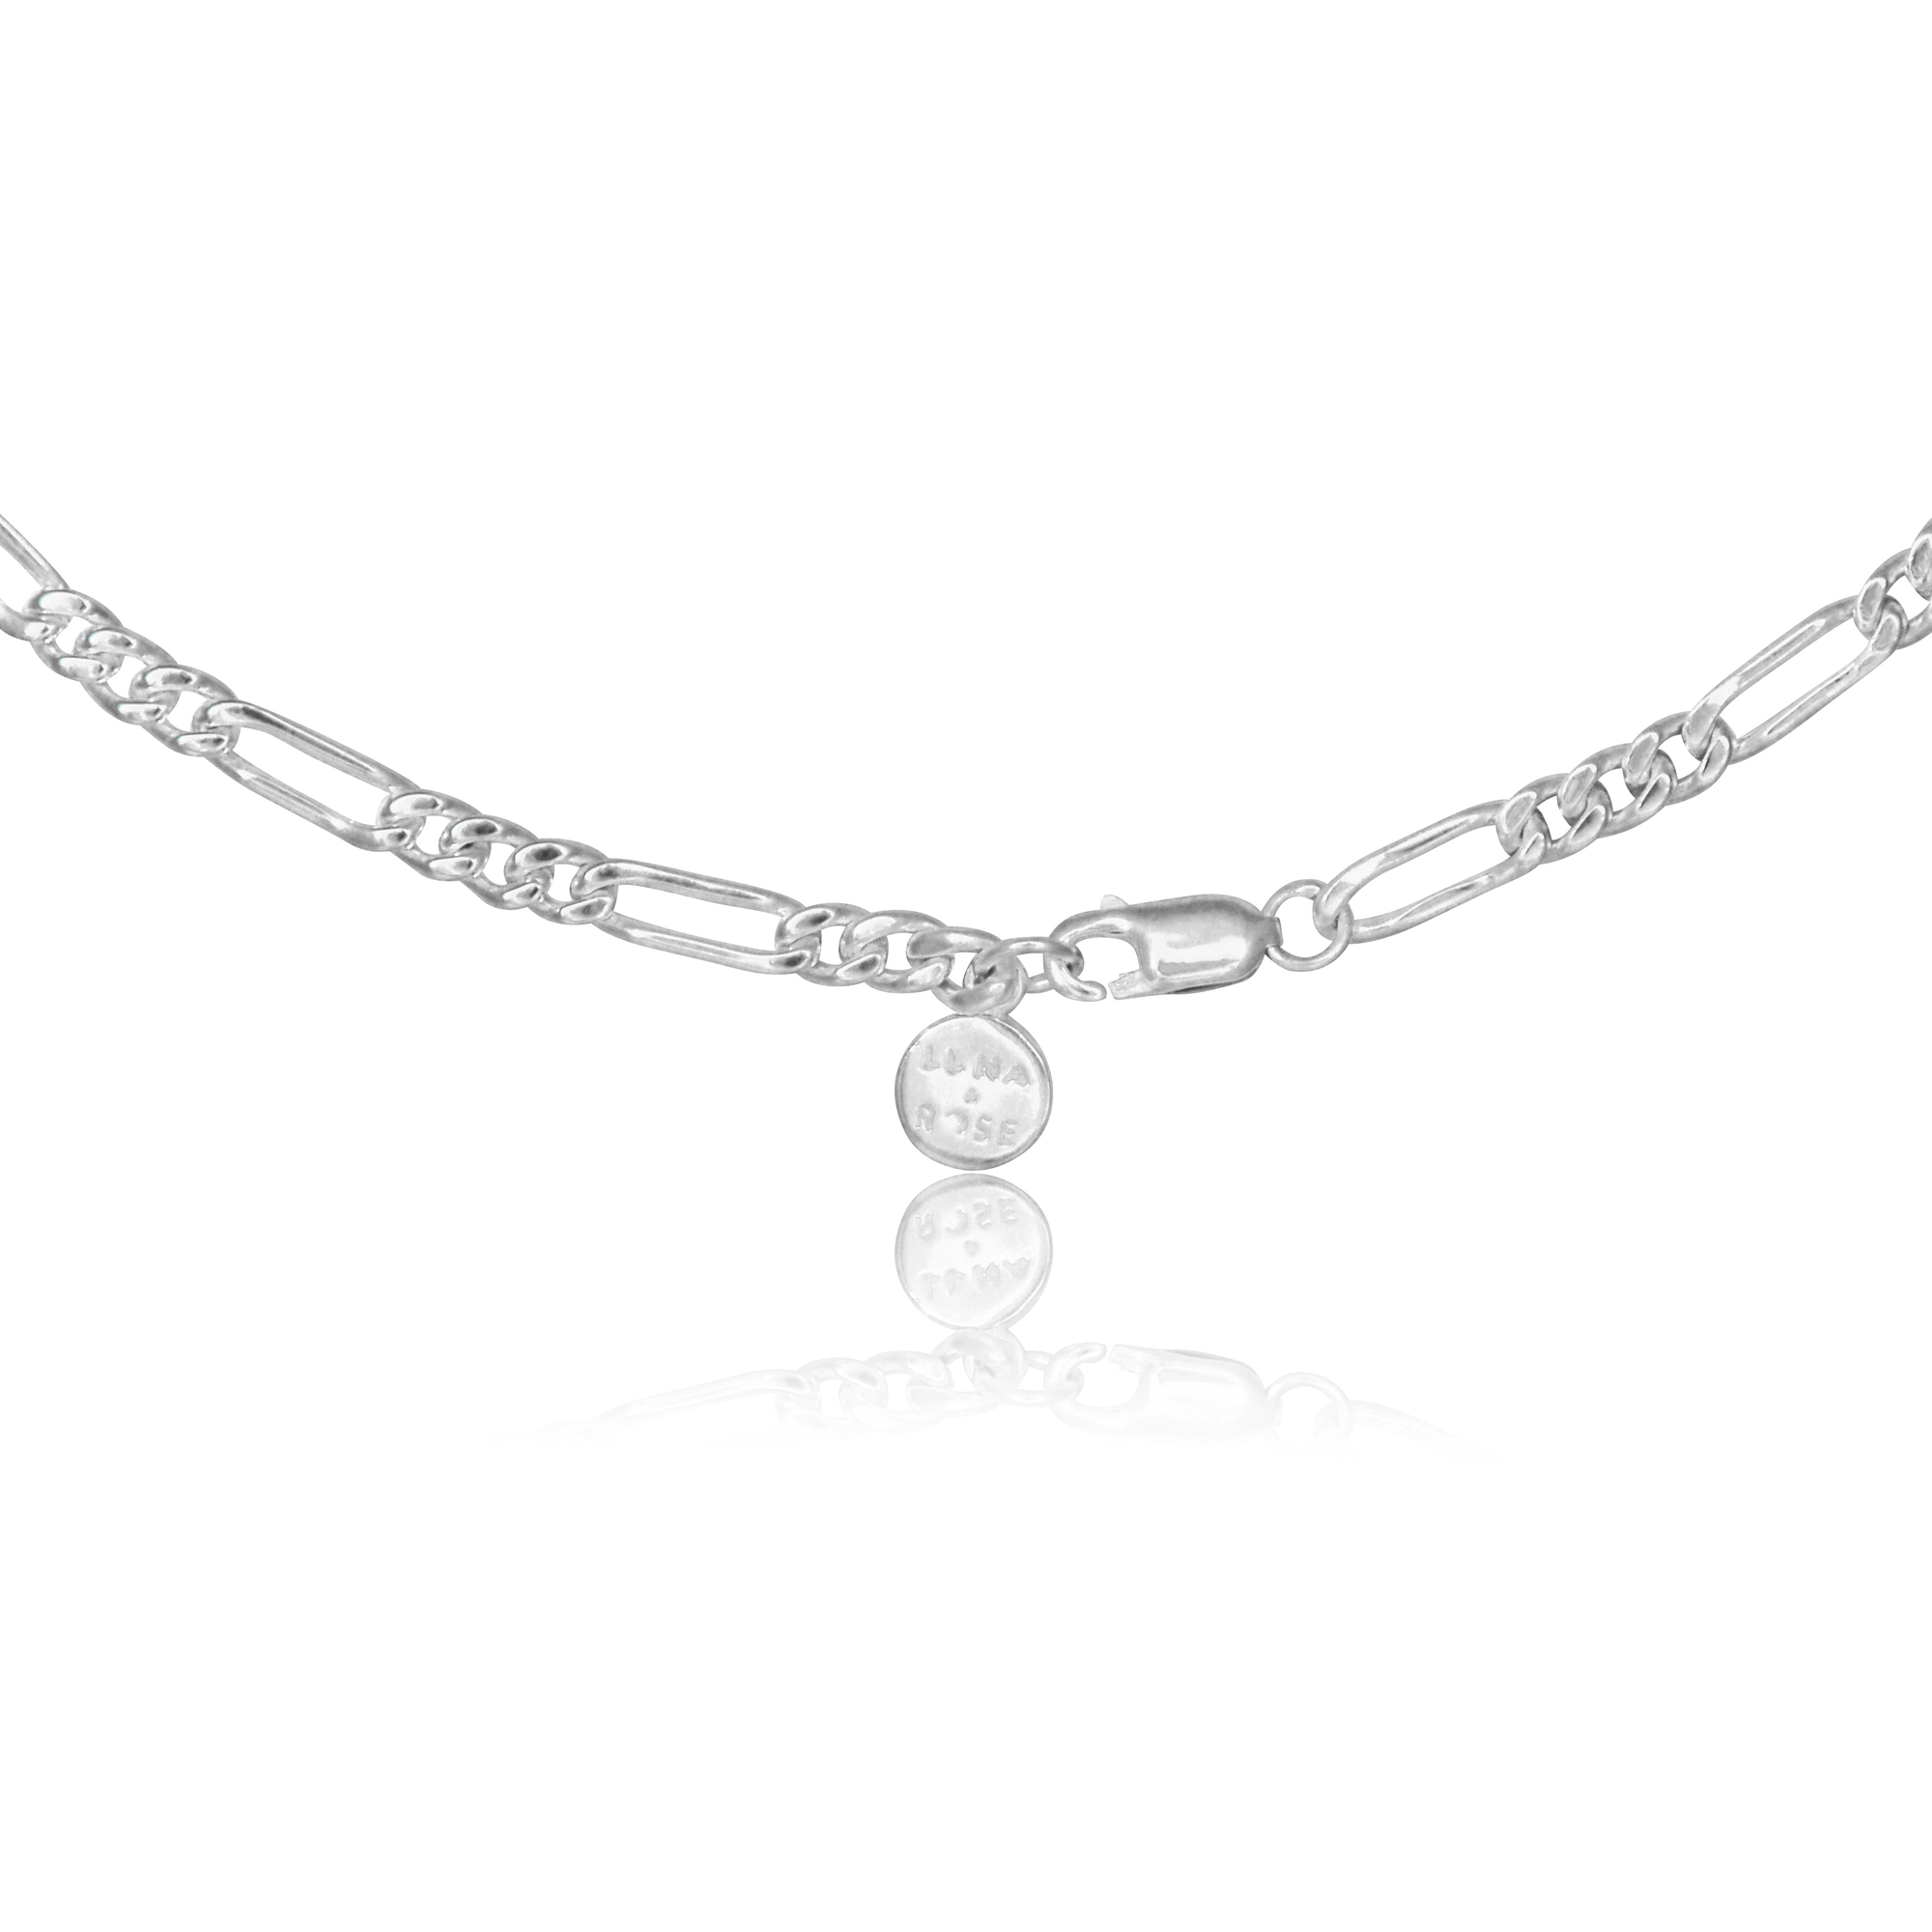 Minimalist Figari Chain Necklace - Silver